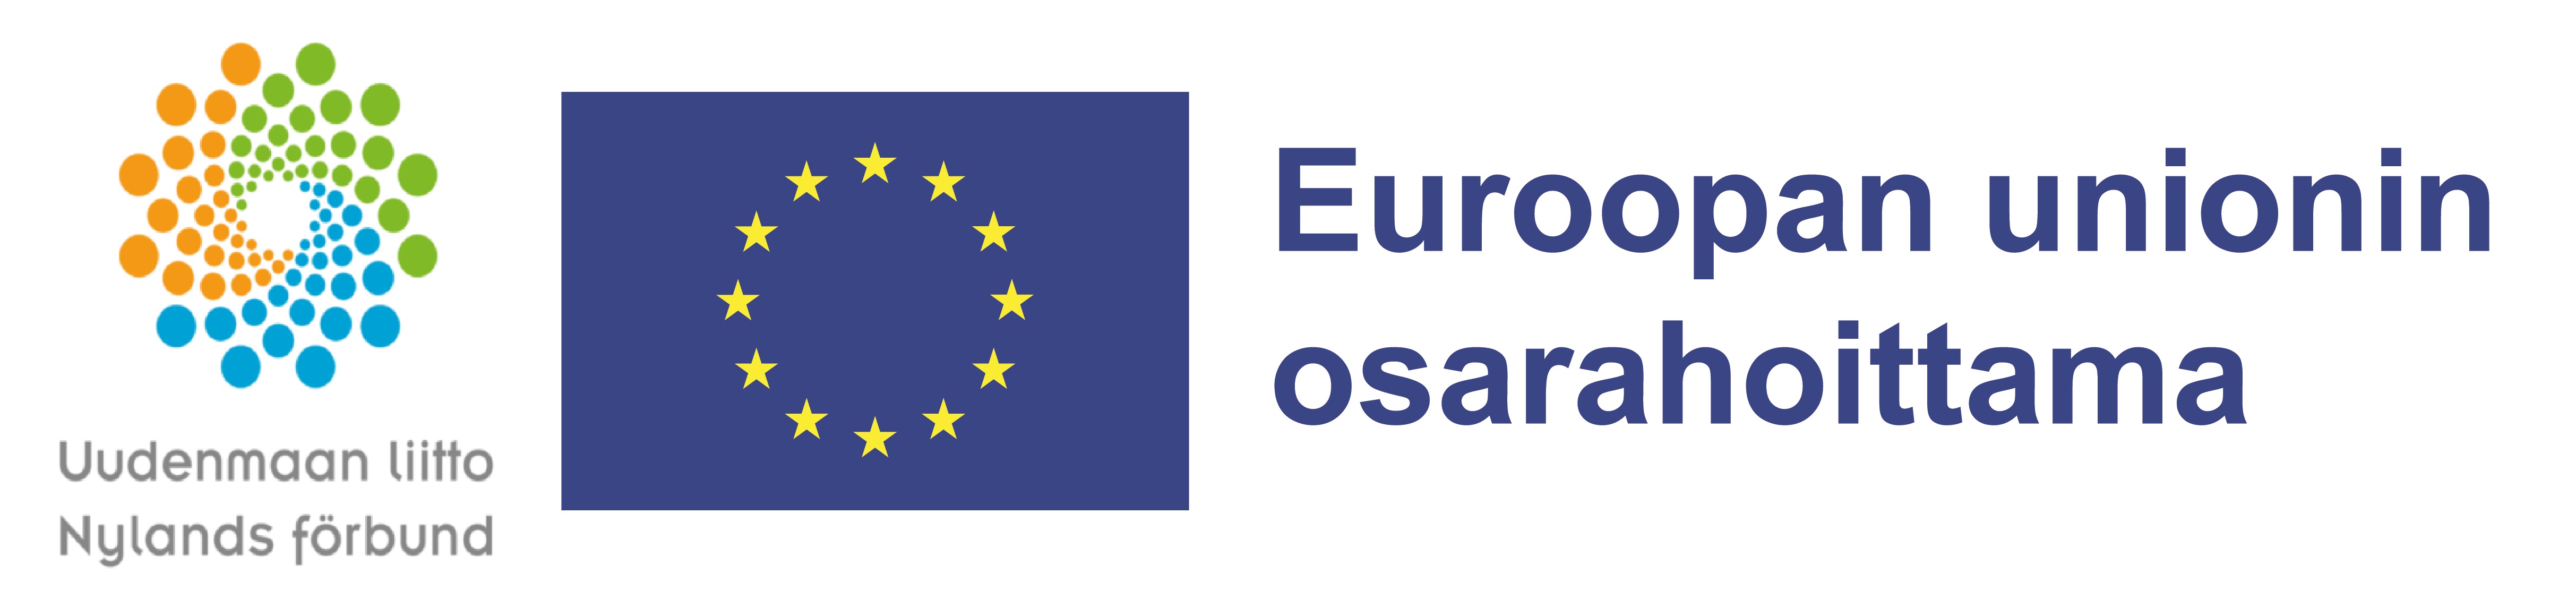 Uudenmaanliiton logo ja teksti "Uudenmaan liitto Nylands förfund" sekä Euroopan unionin logo ja teksti "Euroopan unionin osarahoittama" 